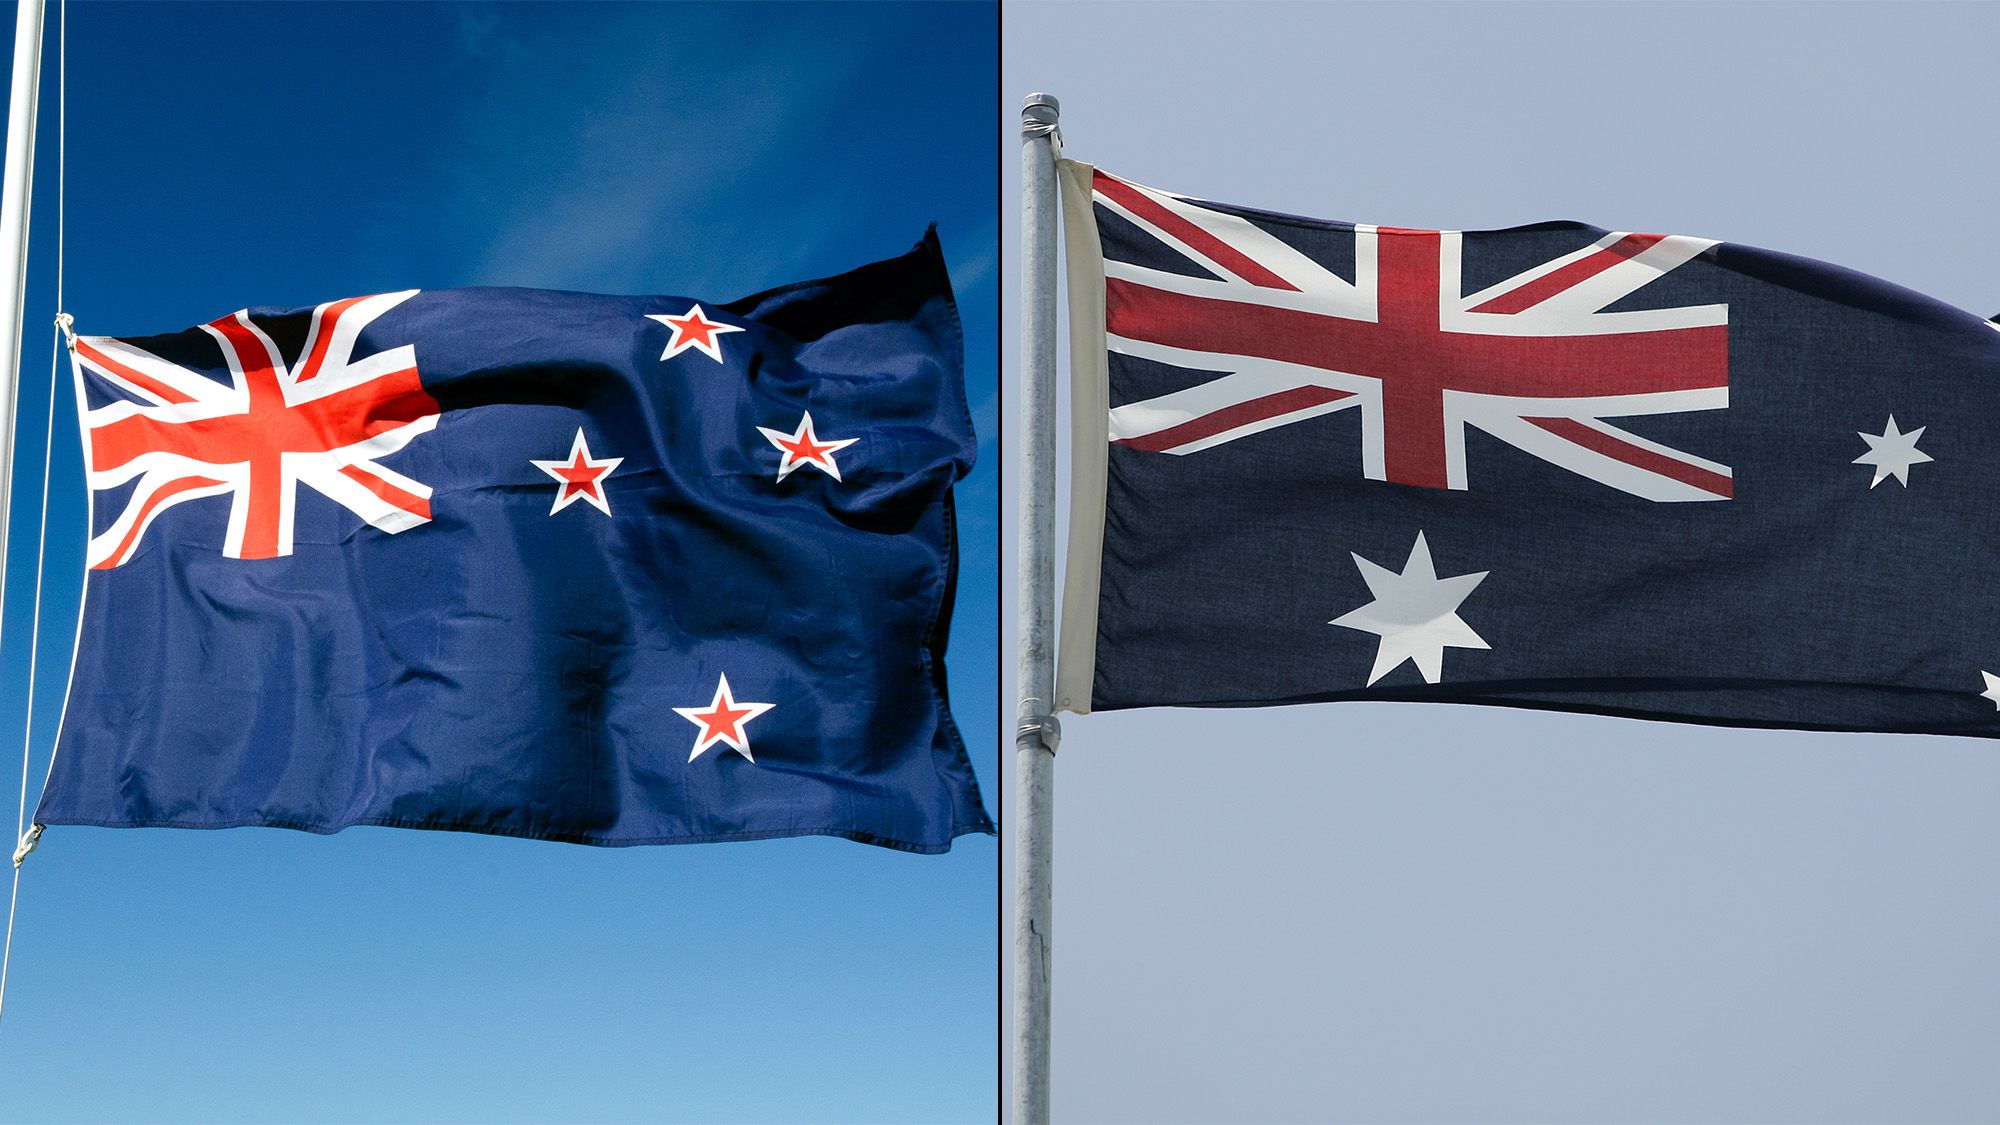 australia should not change its flag